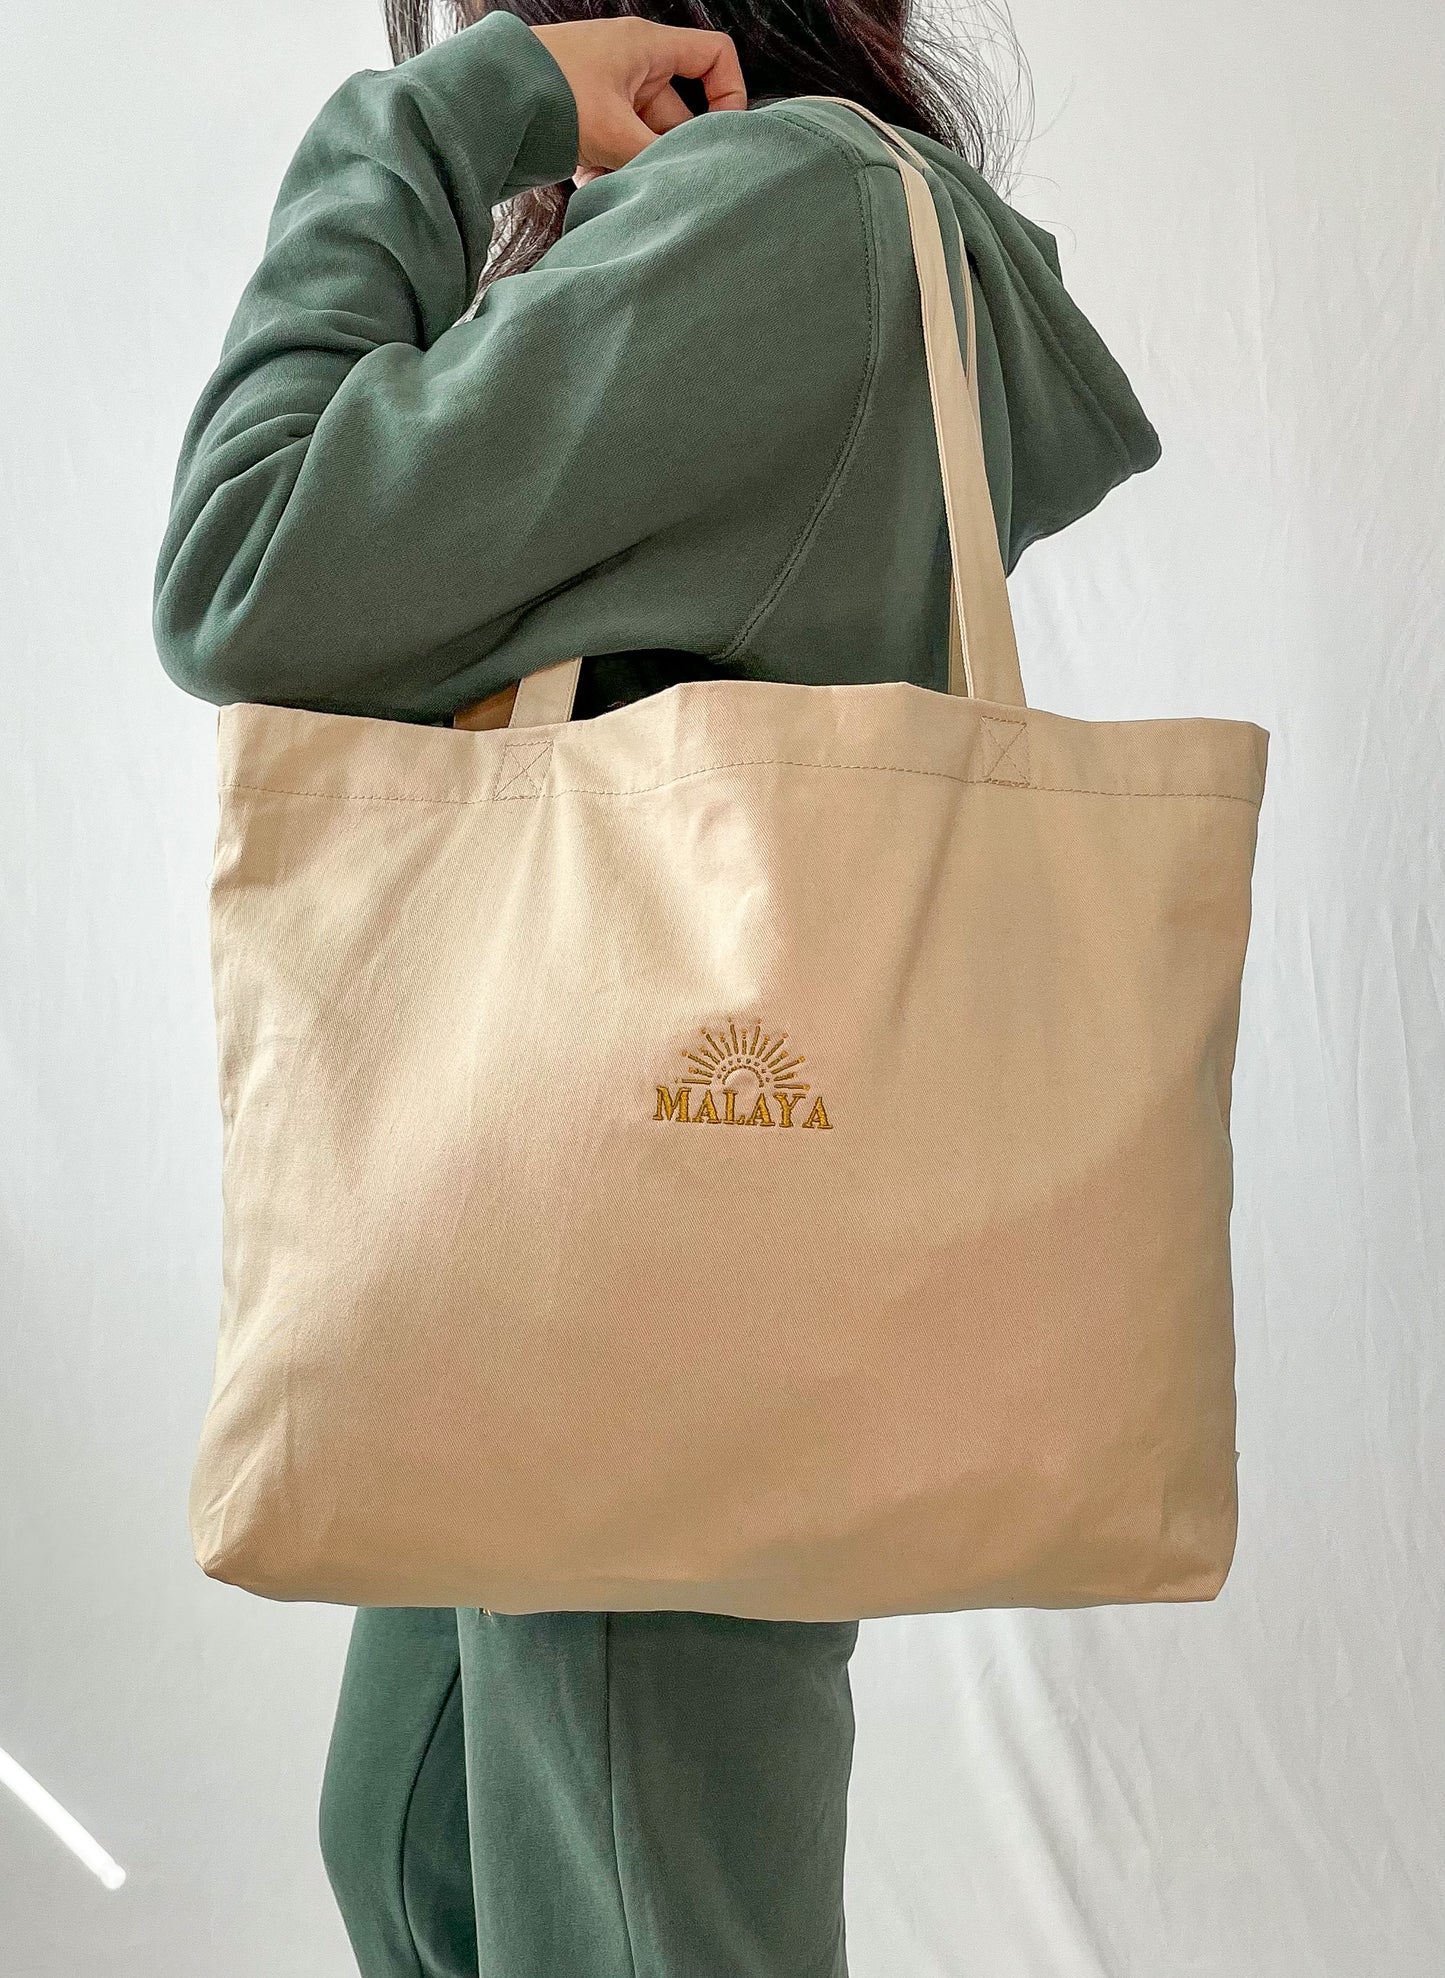 MALAYA Embroidered Organic Cotton Tote Bag